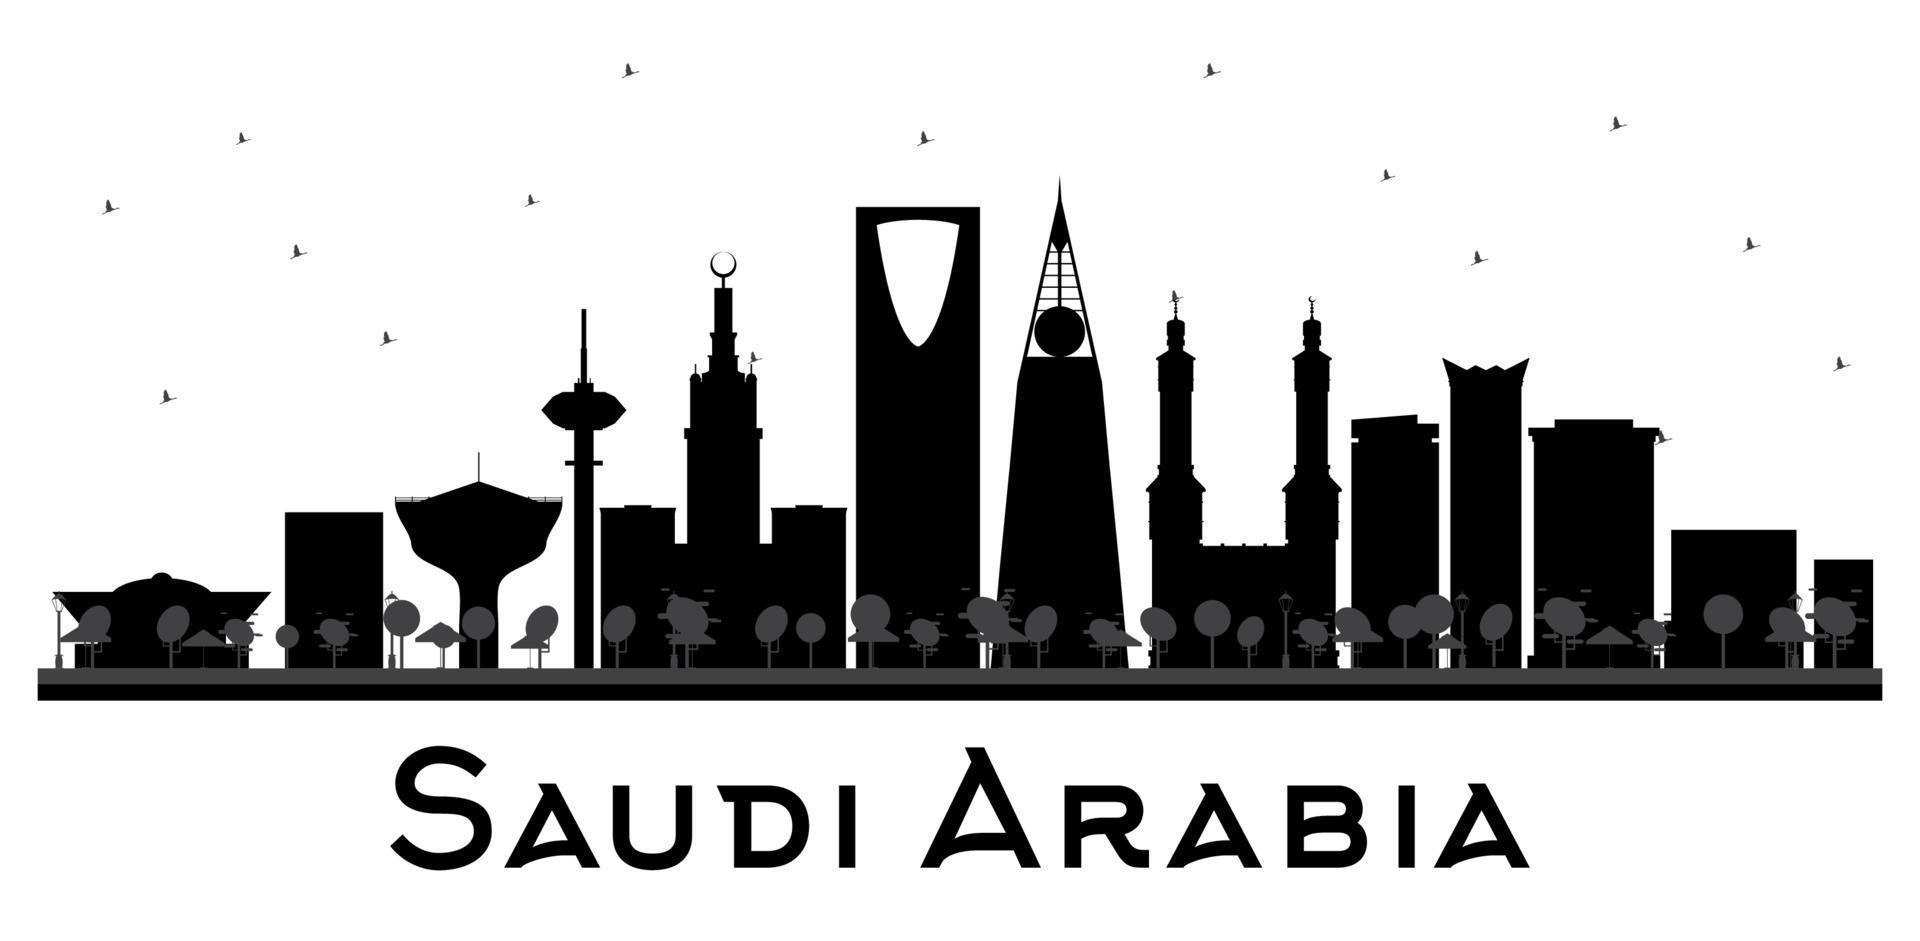 silueta en blanco y negro del horizonte de arabia saudita. vector